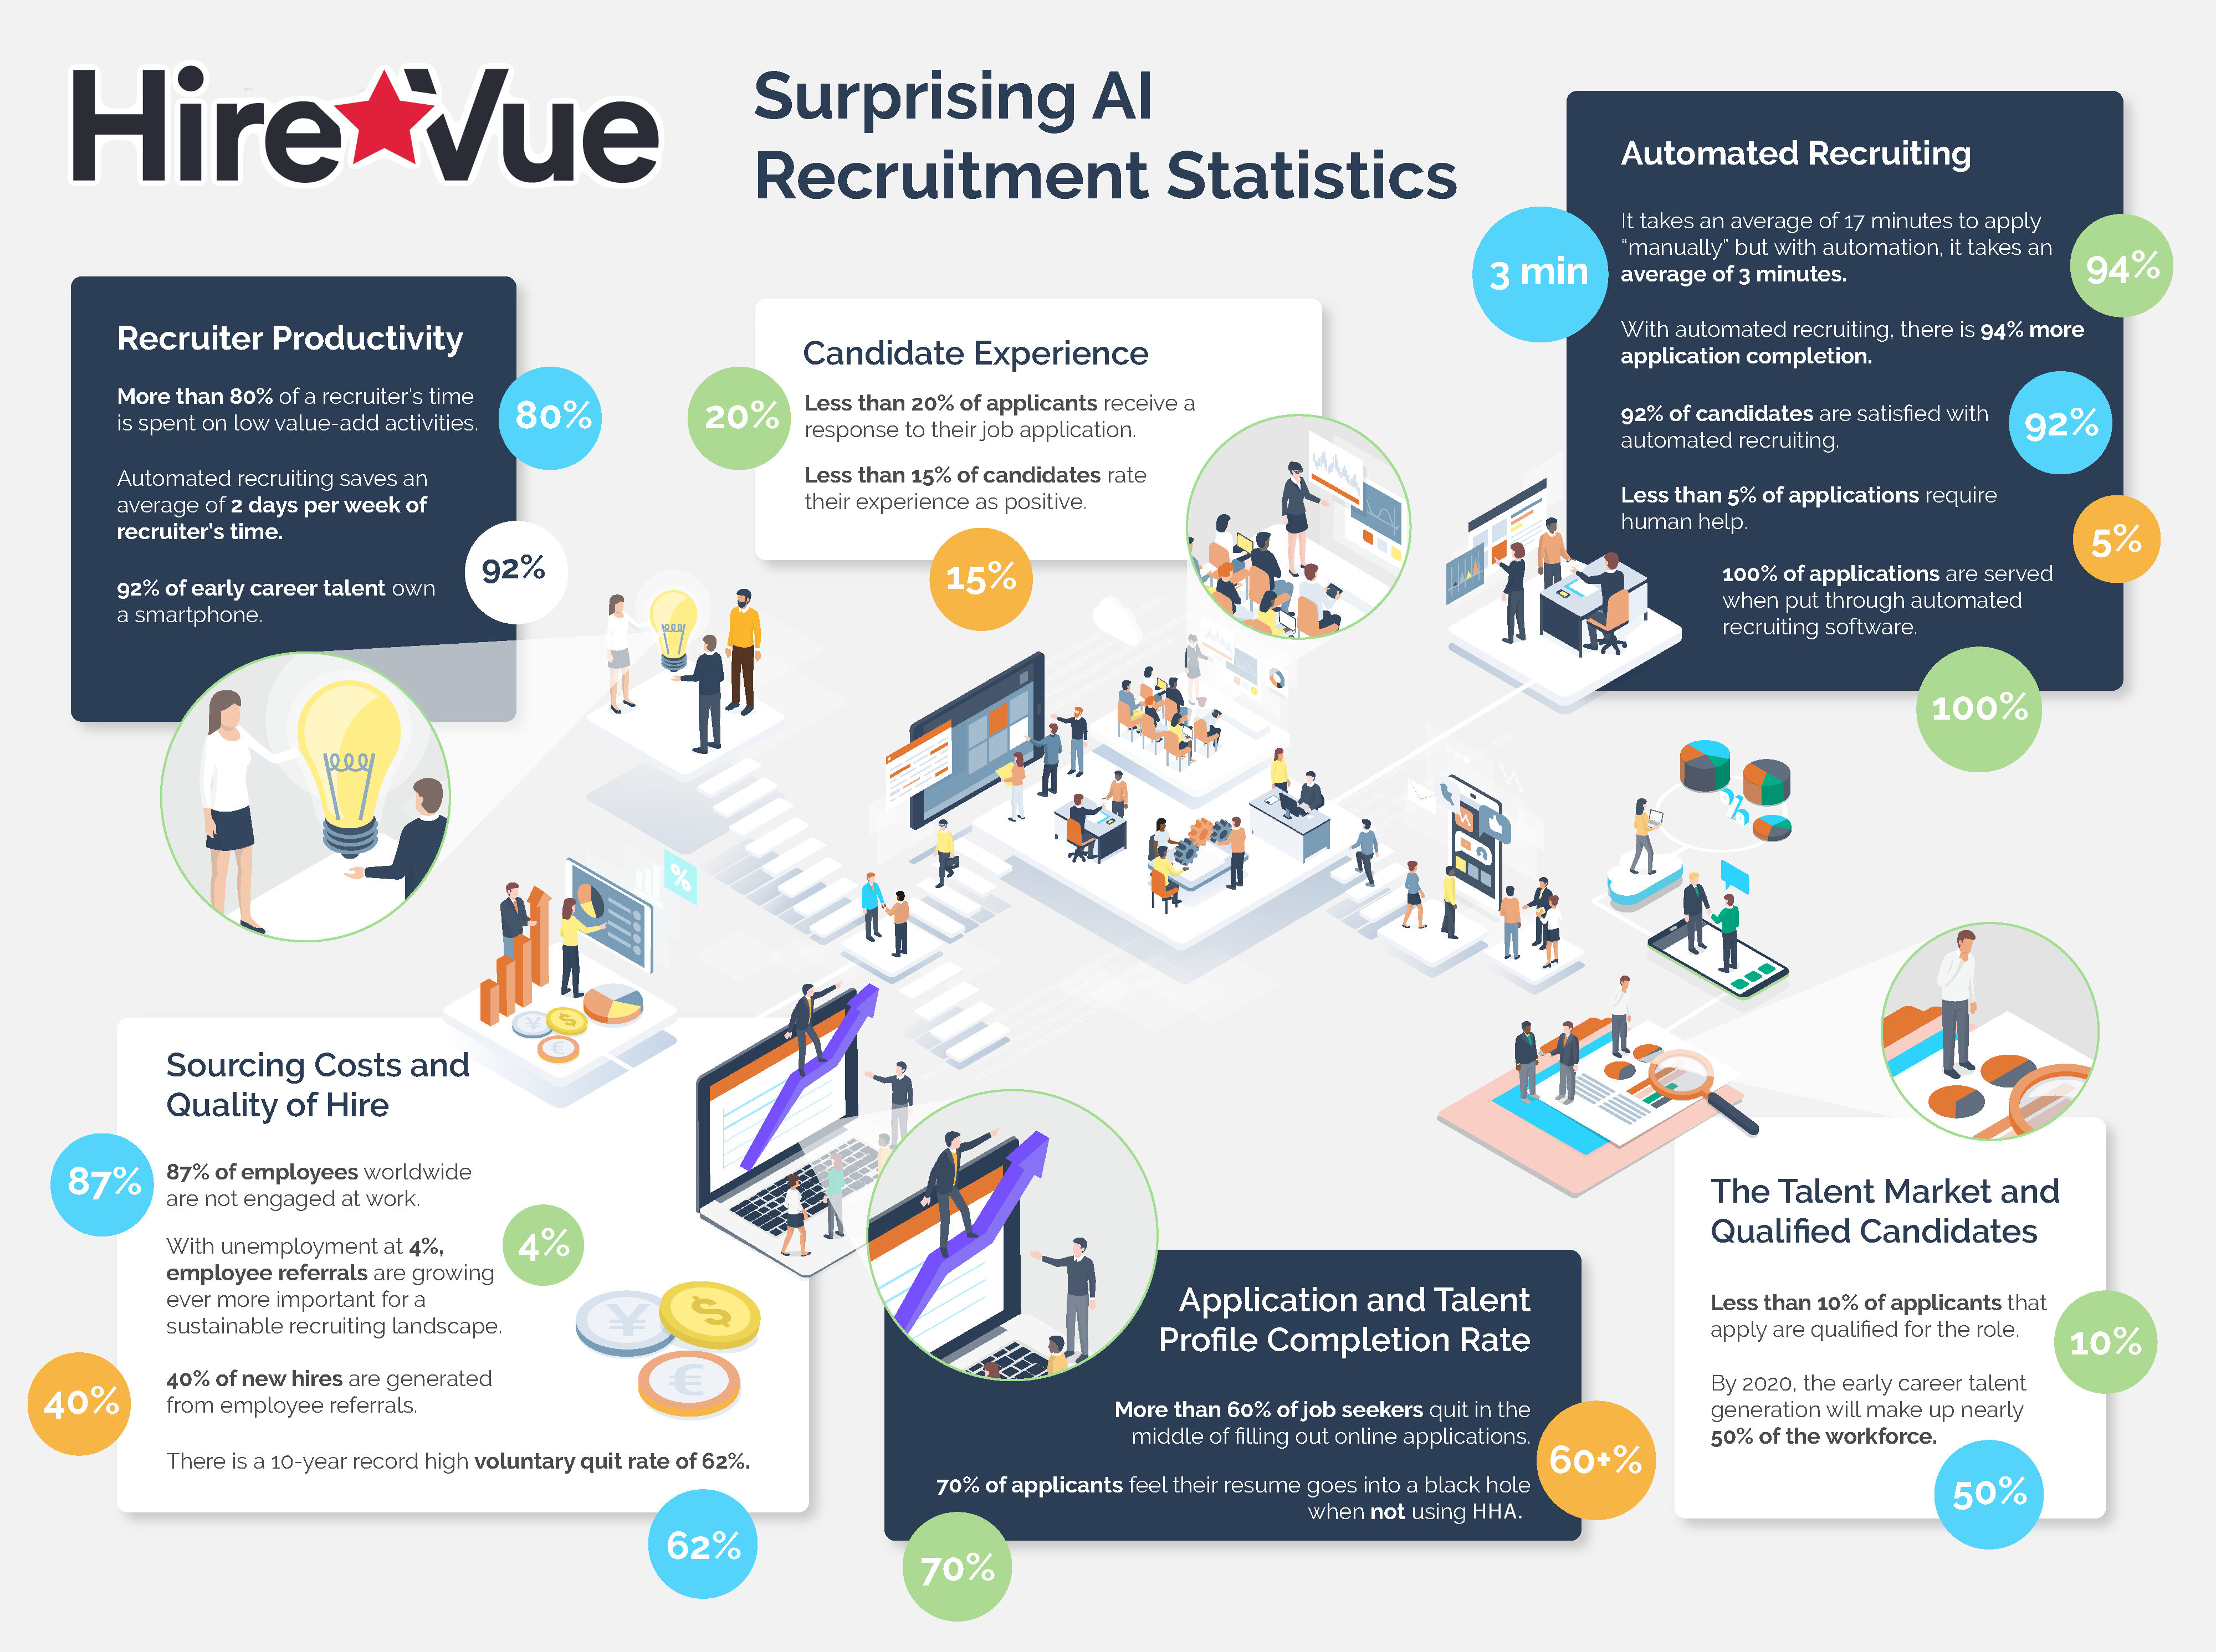 HireVue Hiring Assistant Surprising AI Recruitment Statistics Infographic